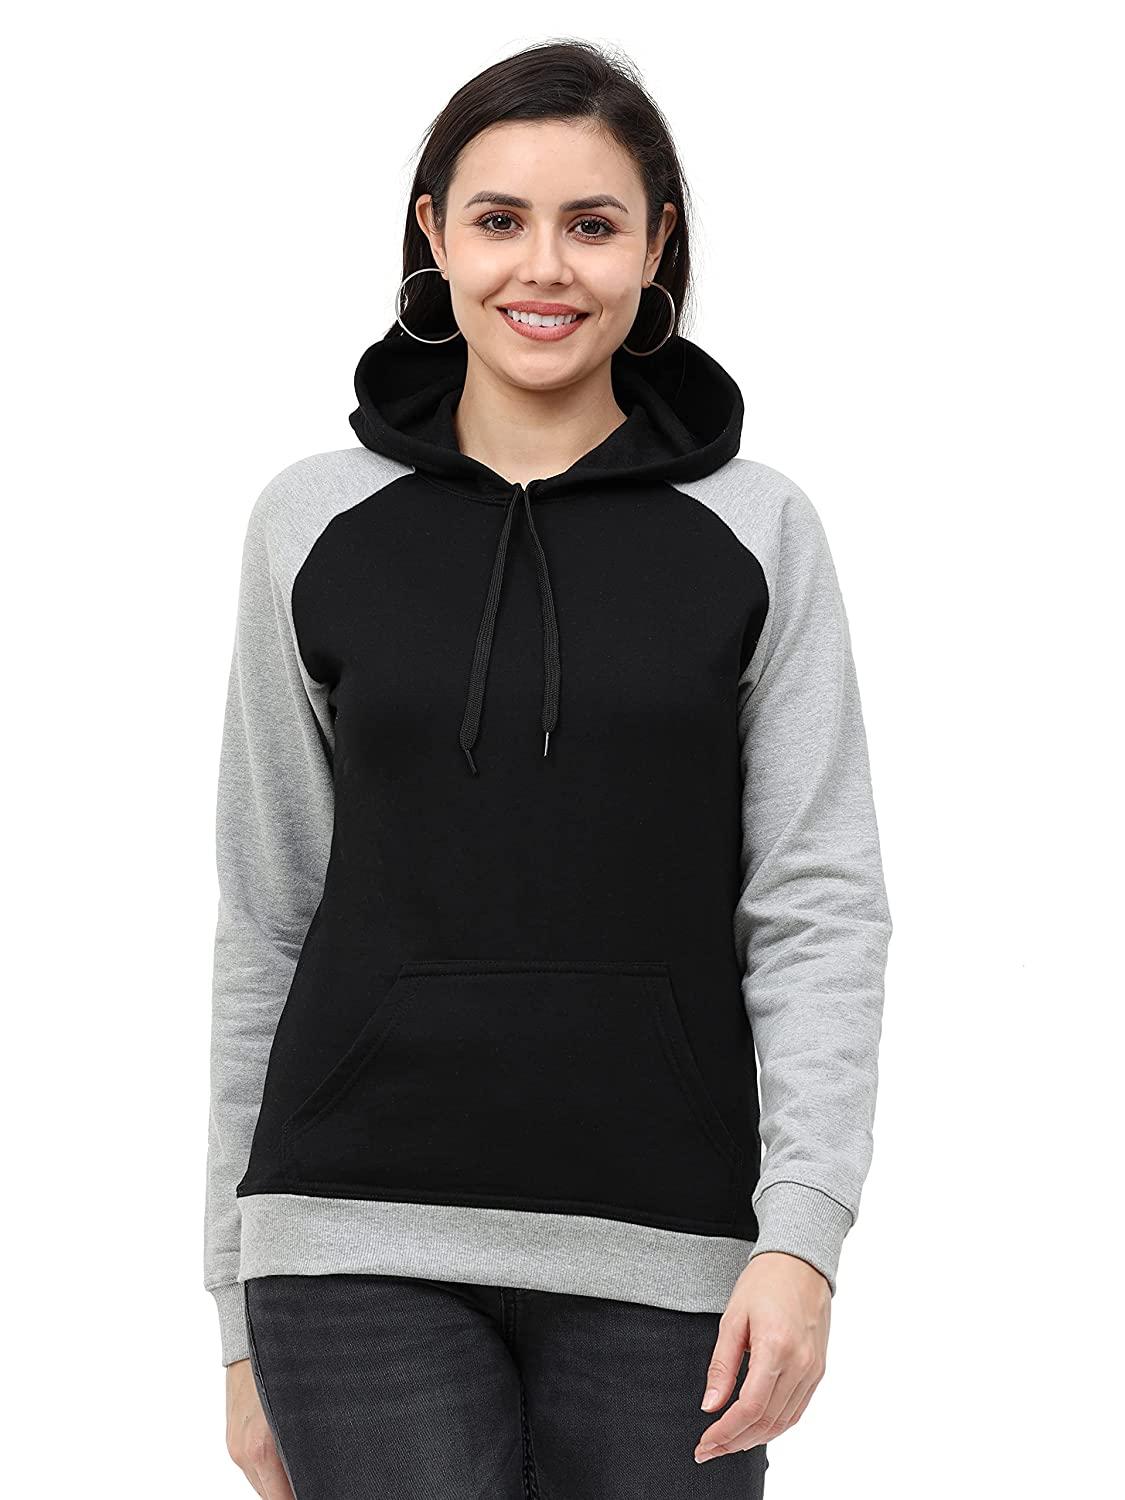 women's cotton color block raglan full sleeve sweatshirt/hoodies